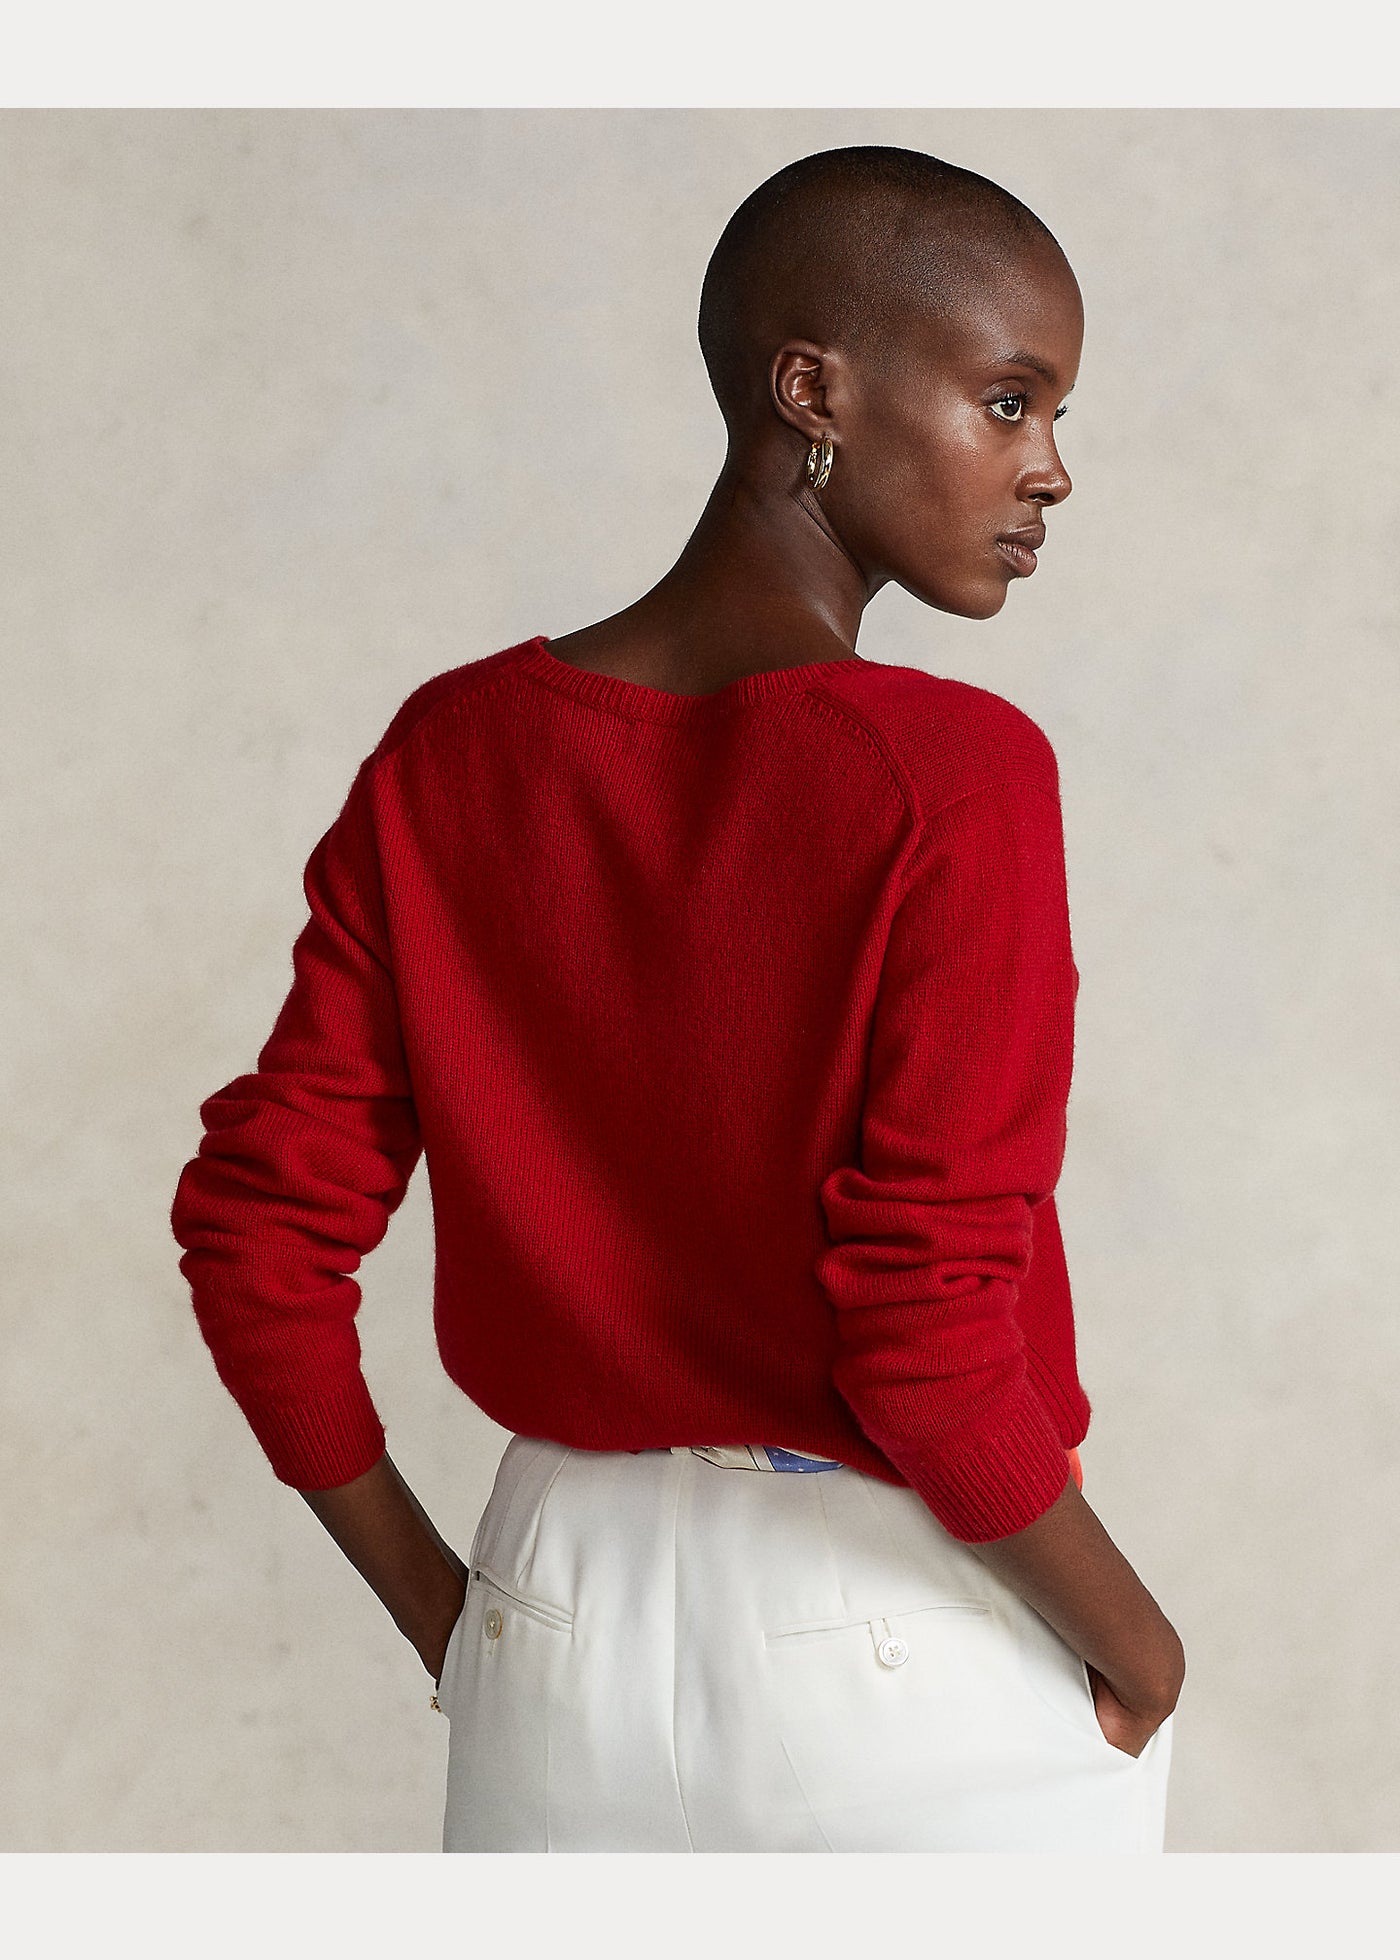 retro maglione ralph lauren donna rosso su modella